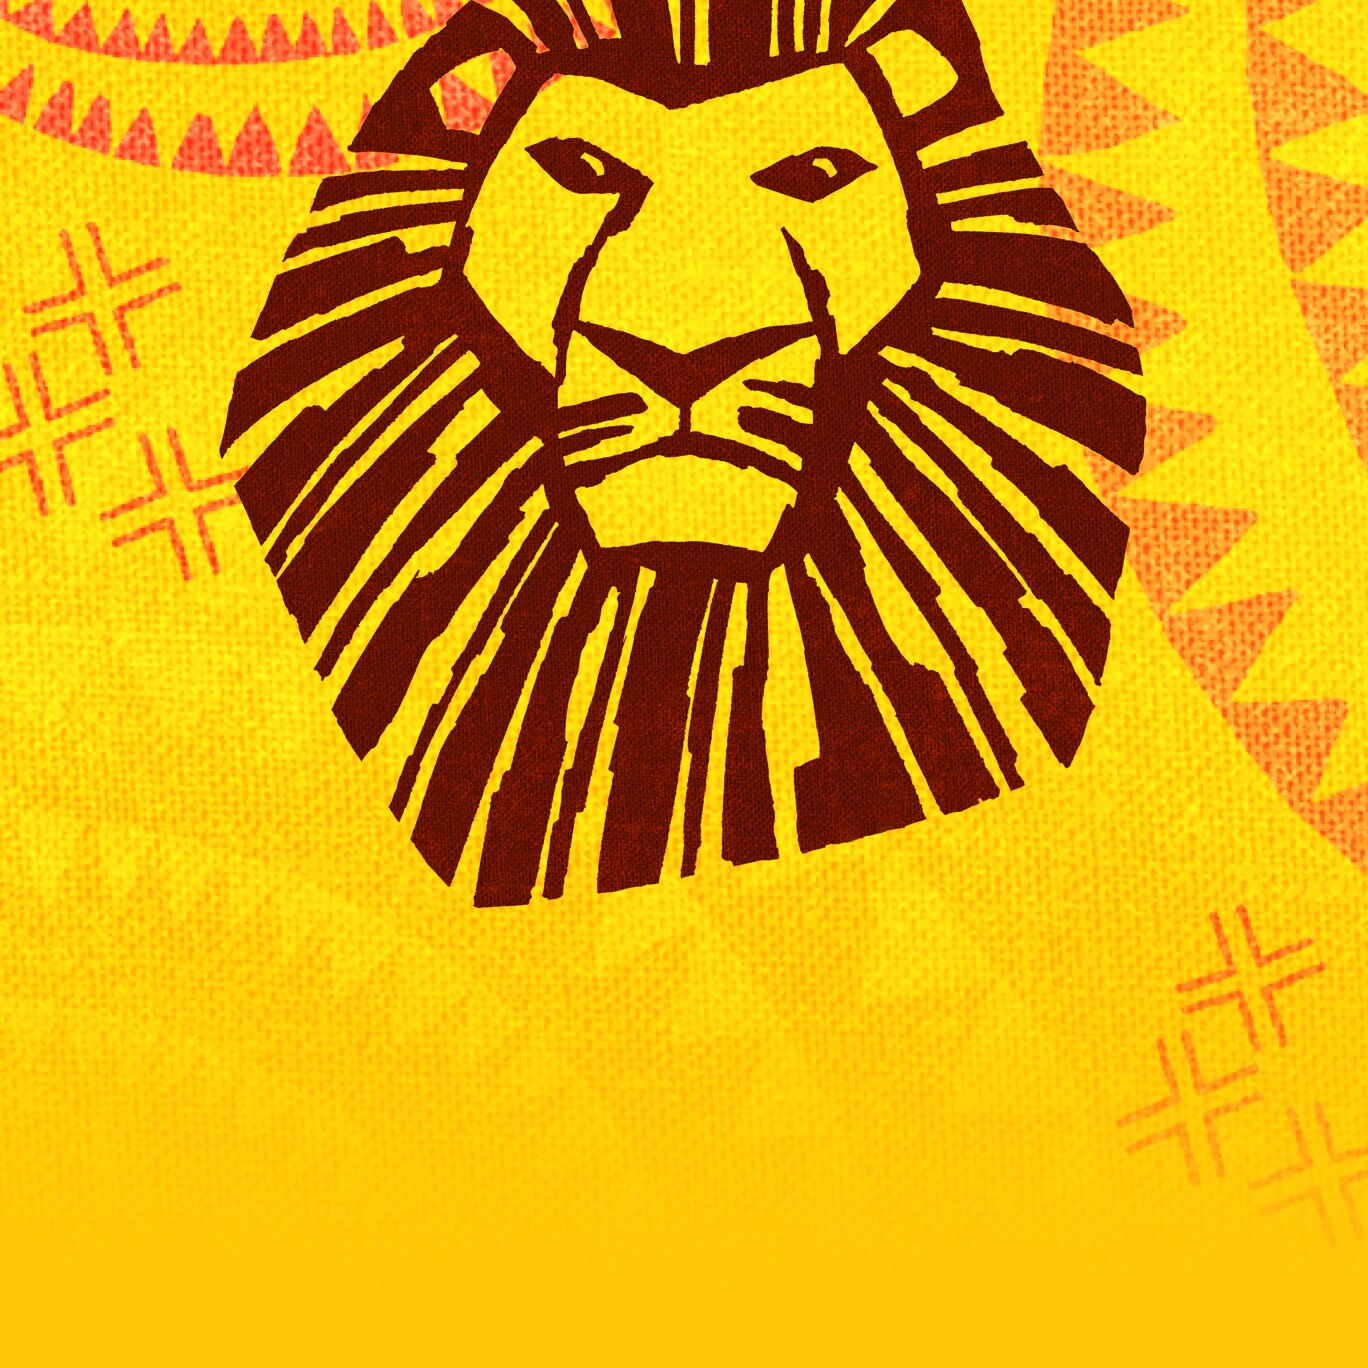 Buche Tickets, um Der König der Löwen